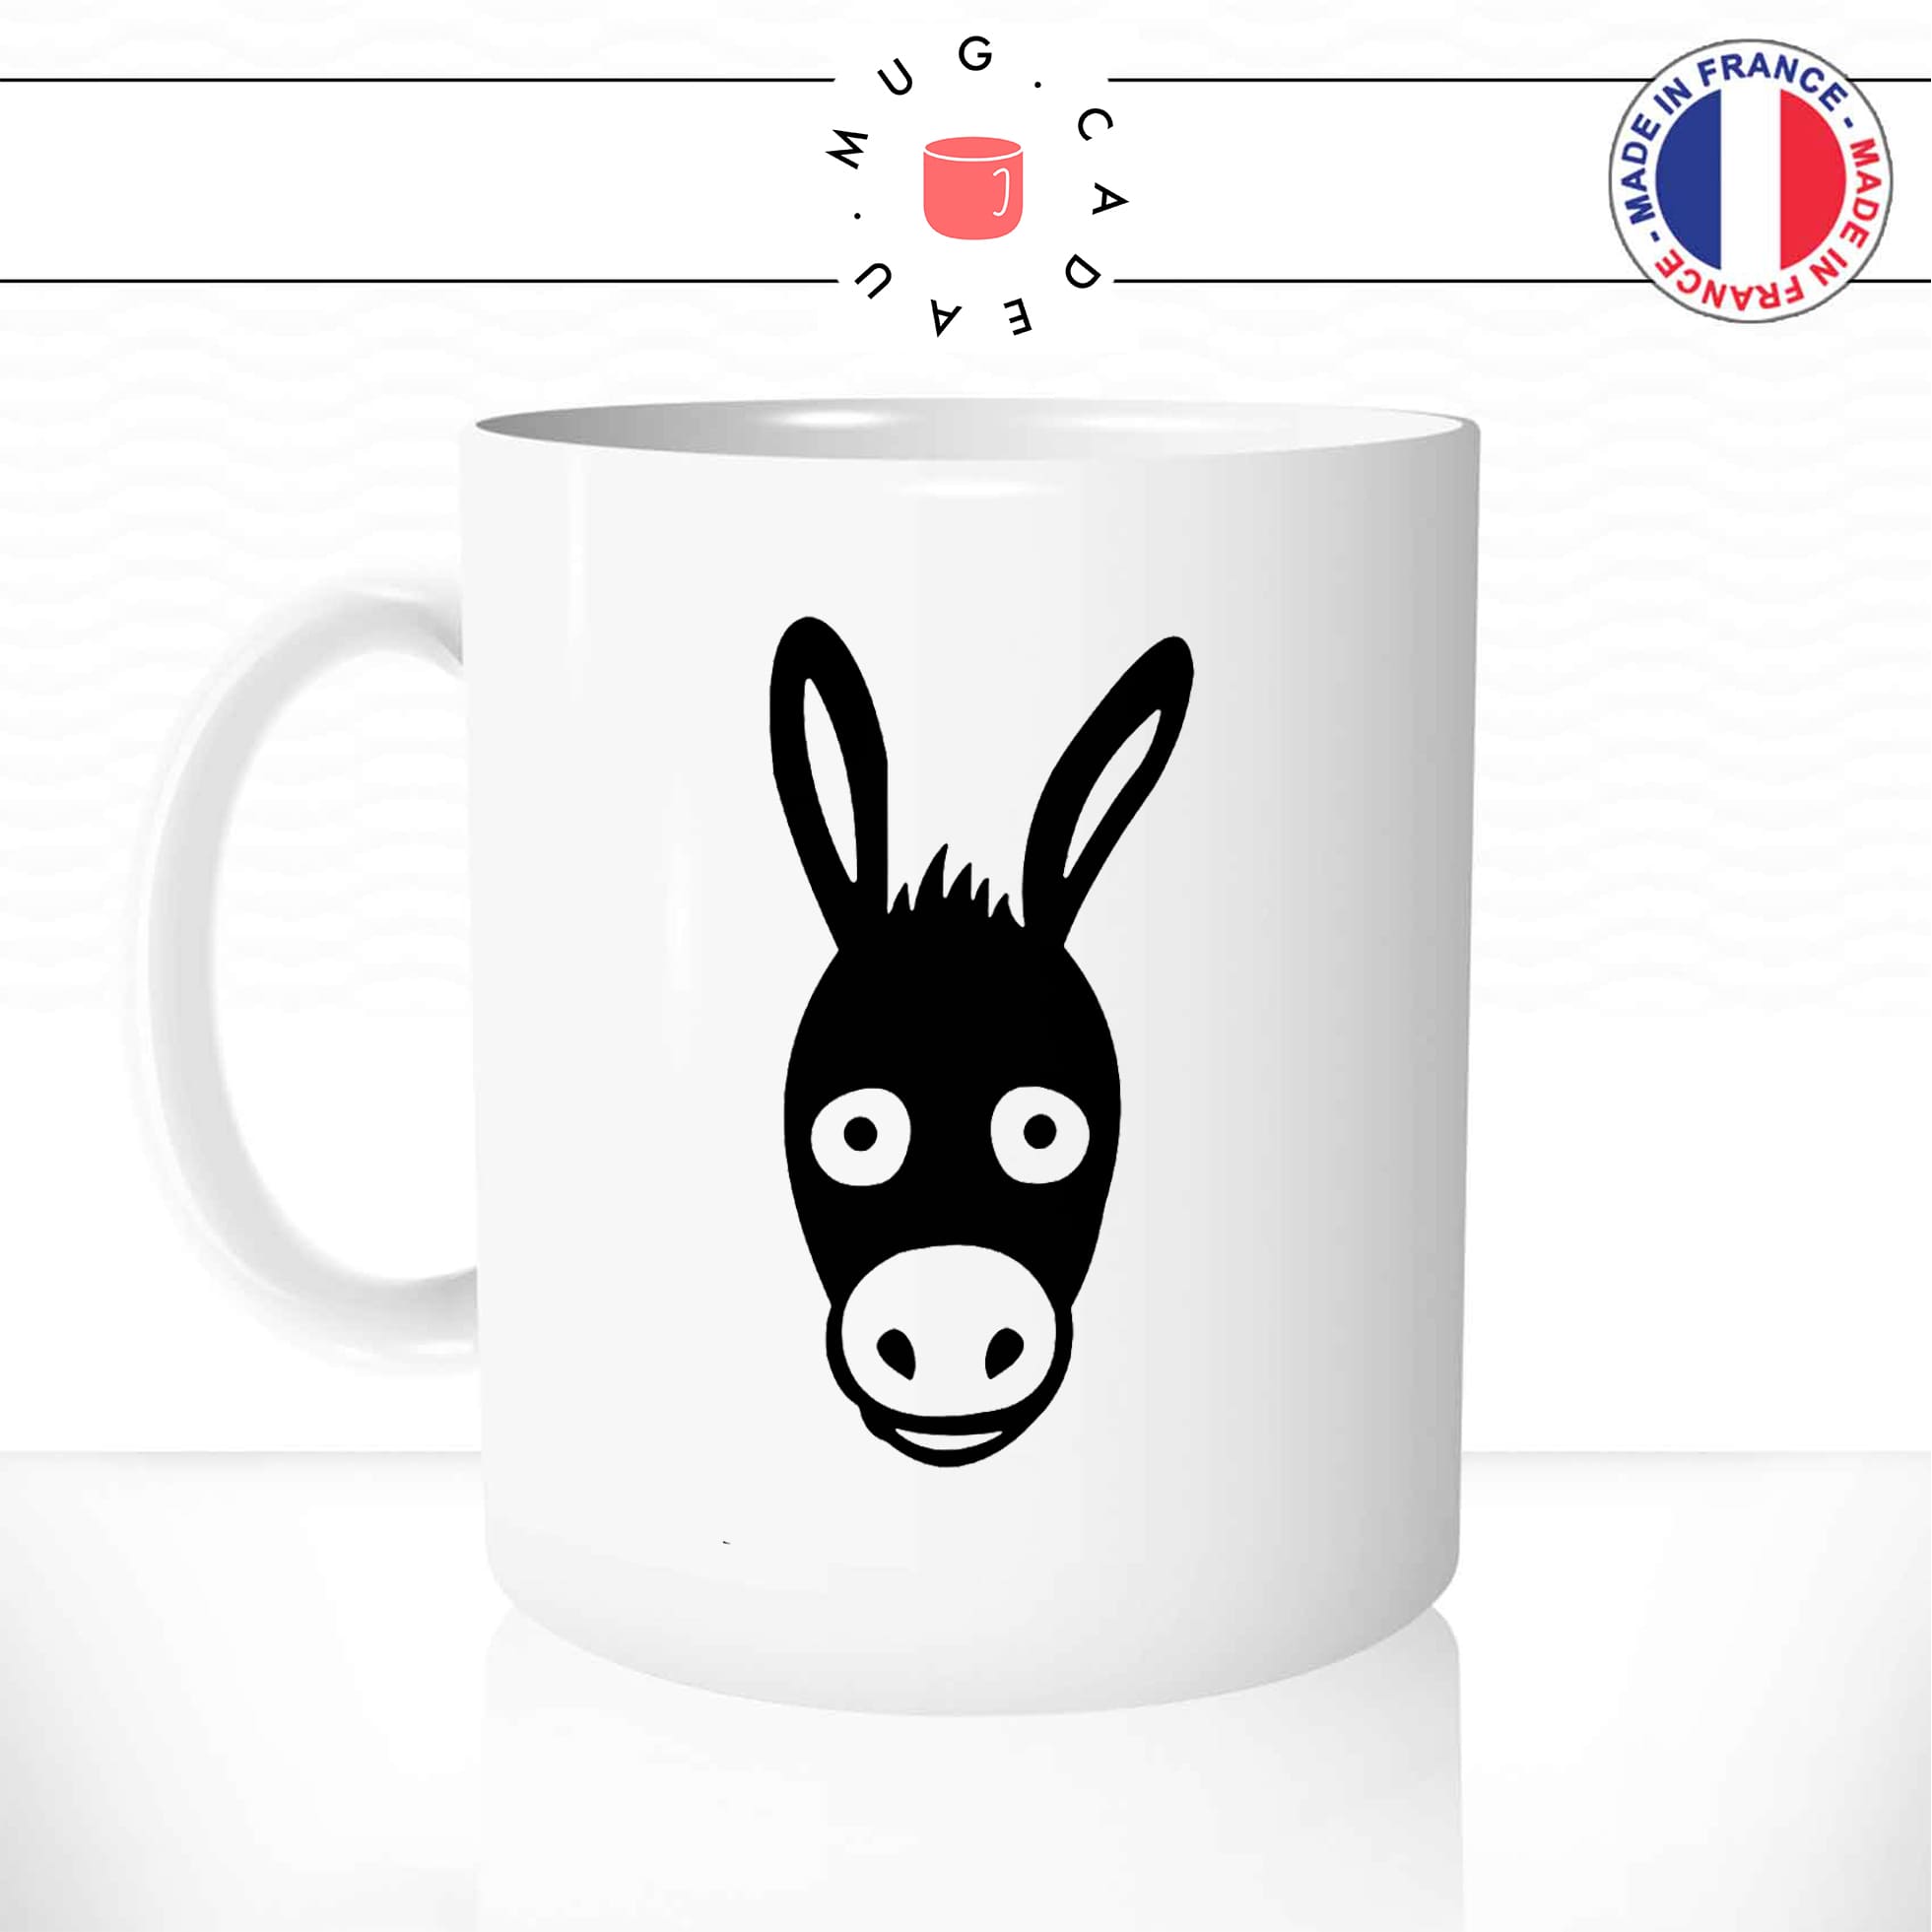 mug-tasse-blanc-dessin-tete-de-mule-cheval-ane-expression-animaux-humour-fun-idée-cadeau-originale-cool